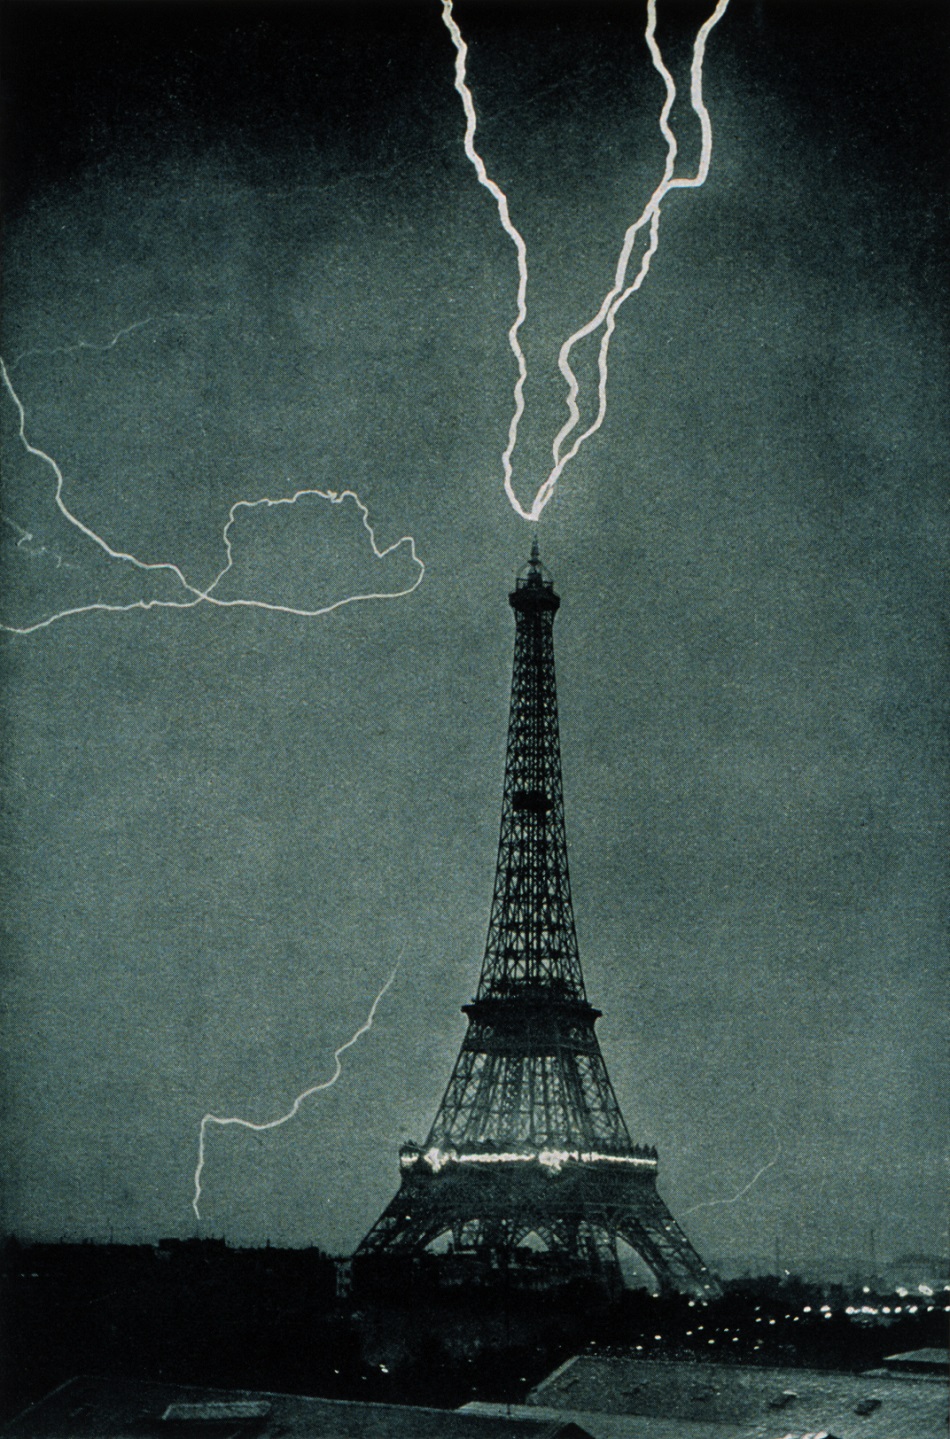 Blesk nad Eiffelovou věží 3.června 1902, jedna z prvních fotografií blesku, M. G. Loppé [Public domain].